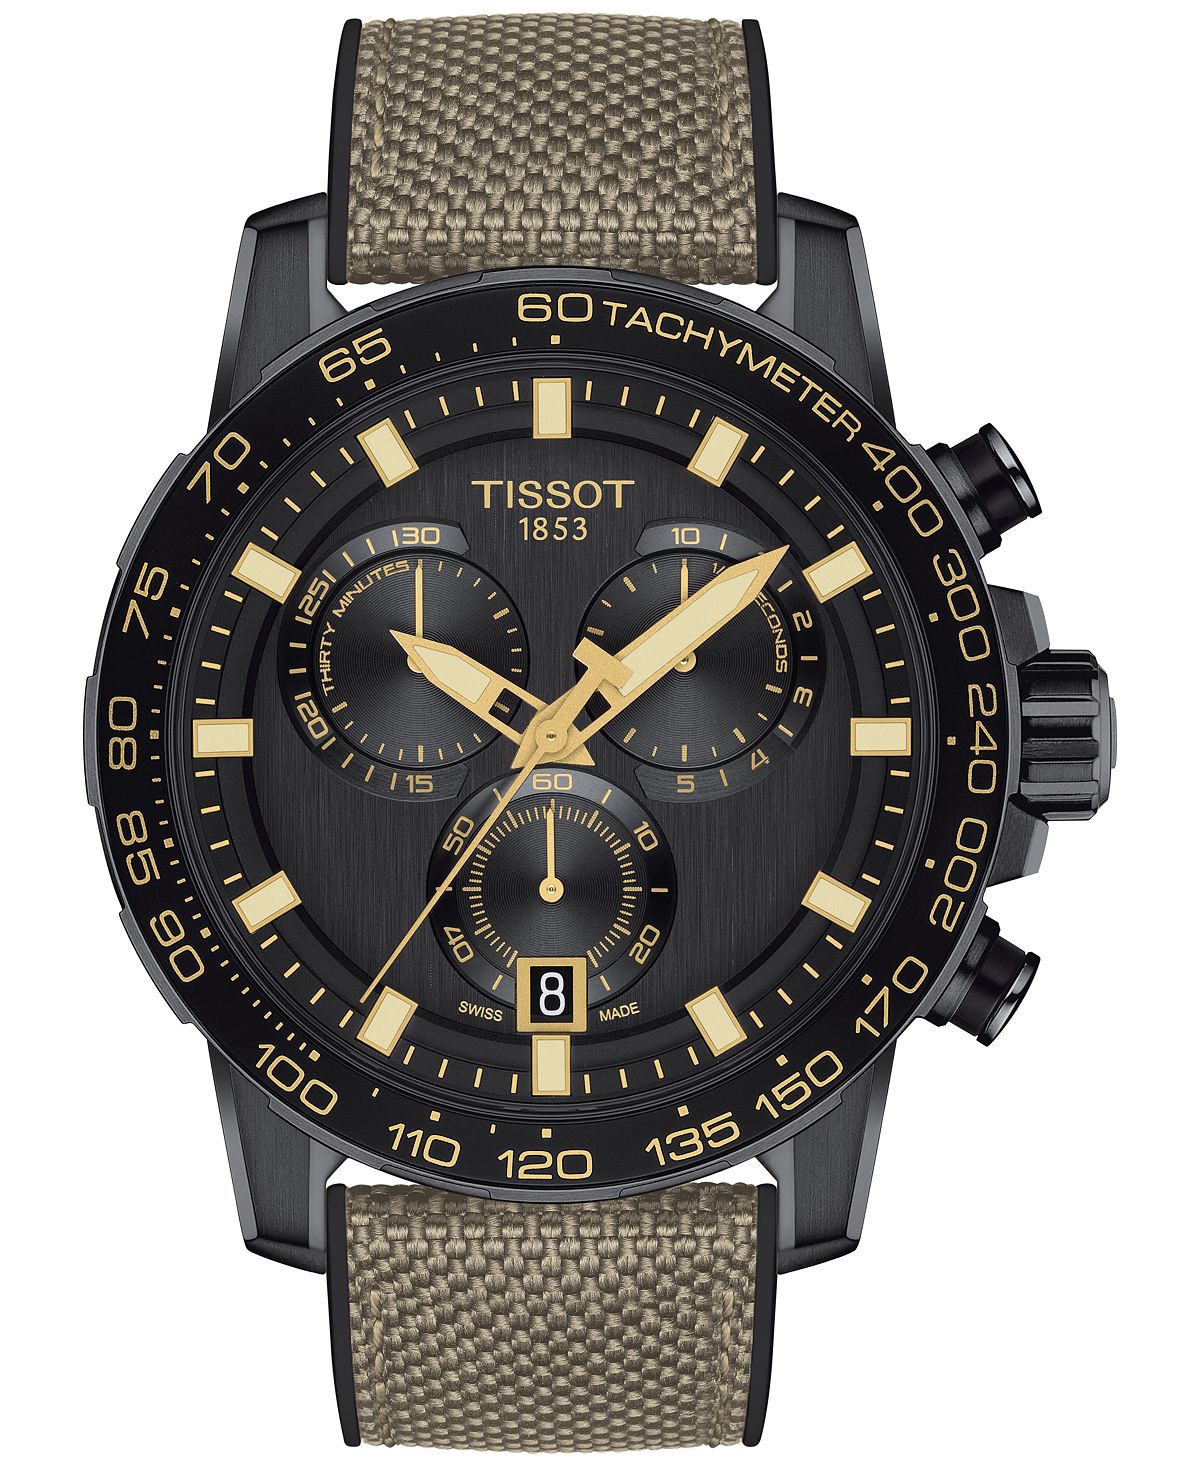 Мужские швейцарские часы с хронографом Supersport, бежевый текстильный ремешок, 40 мм Tissot фото